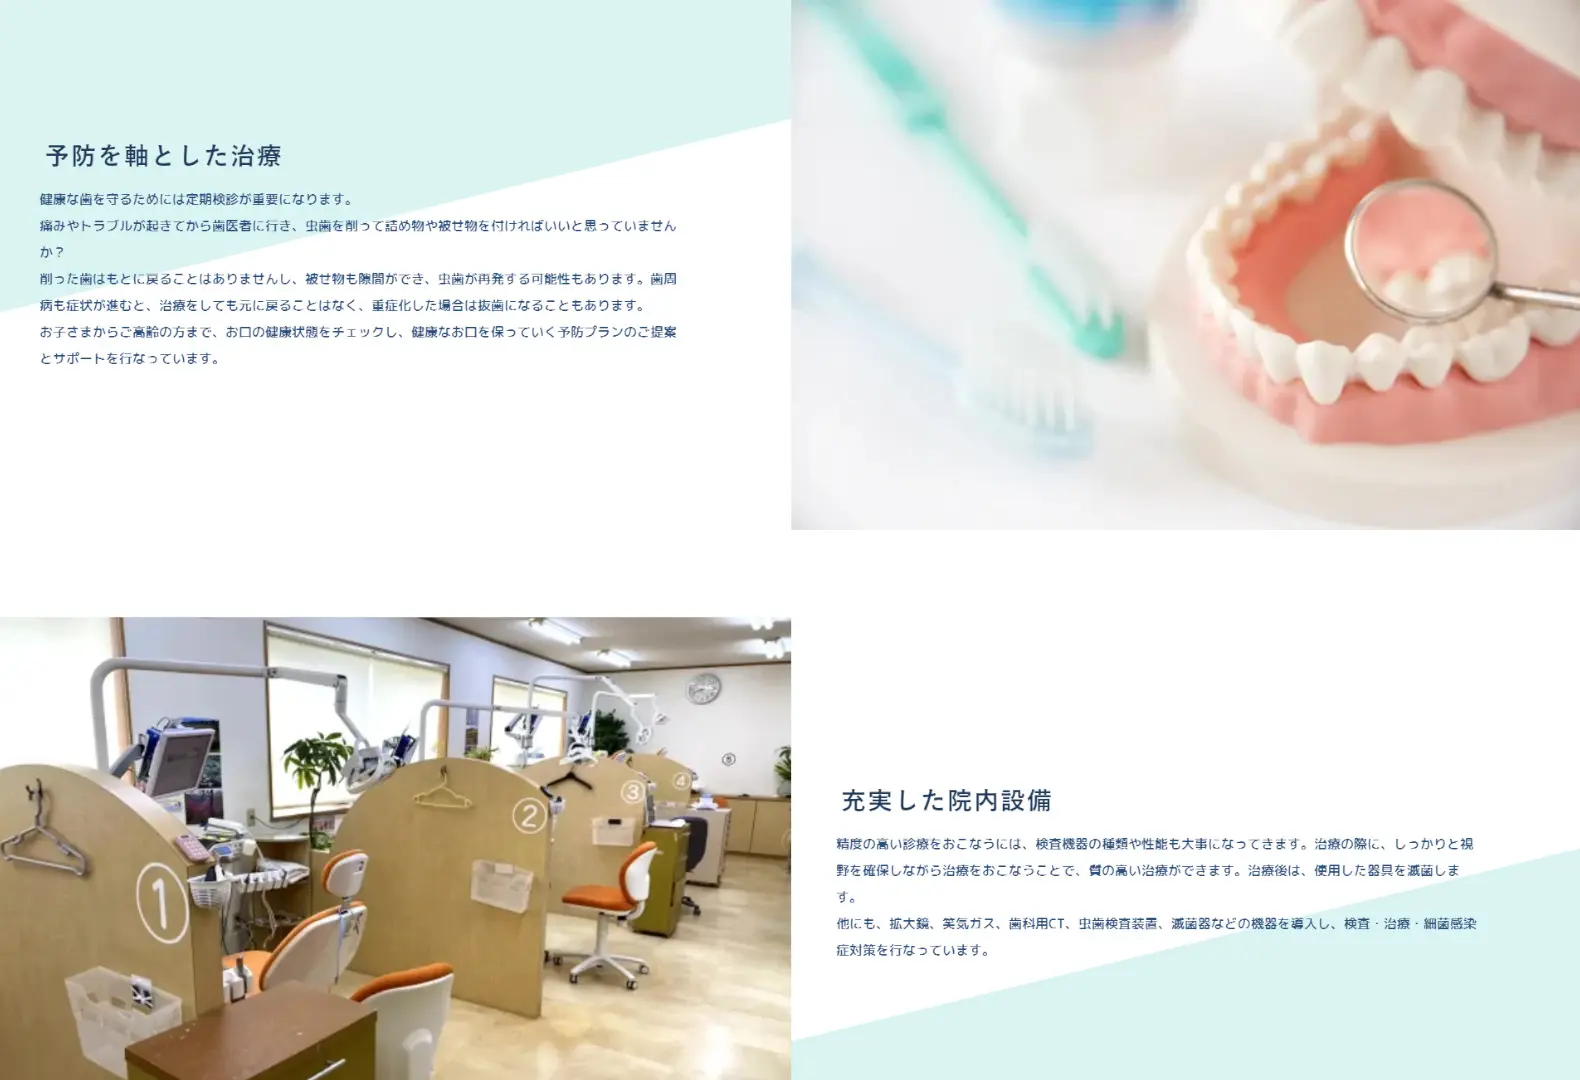 じろうまる歯科室・一般歯科のコーポレートサイトをリニューアル丨ホームページ制作の合同会社ネットランド